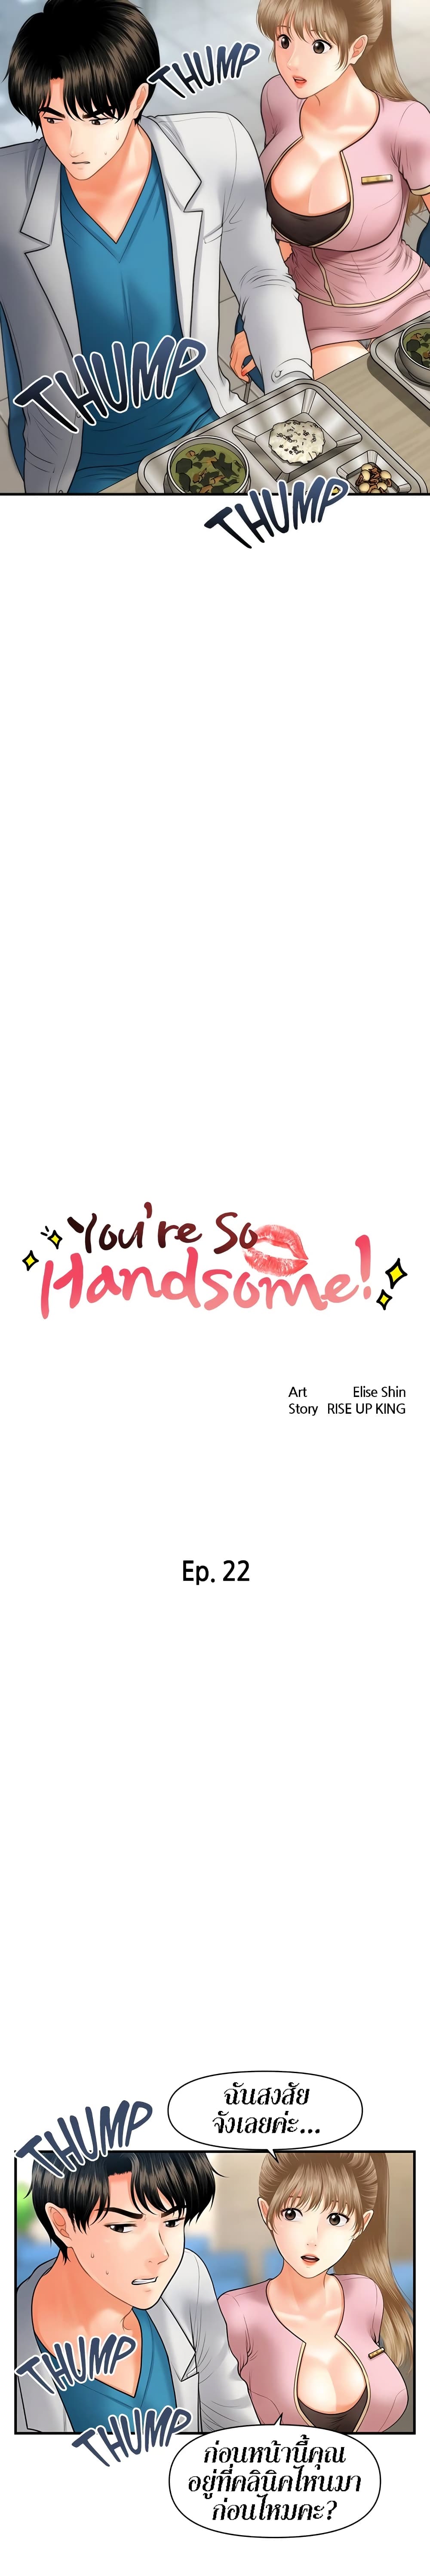 Hey, Handsome 22 02